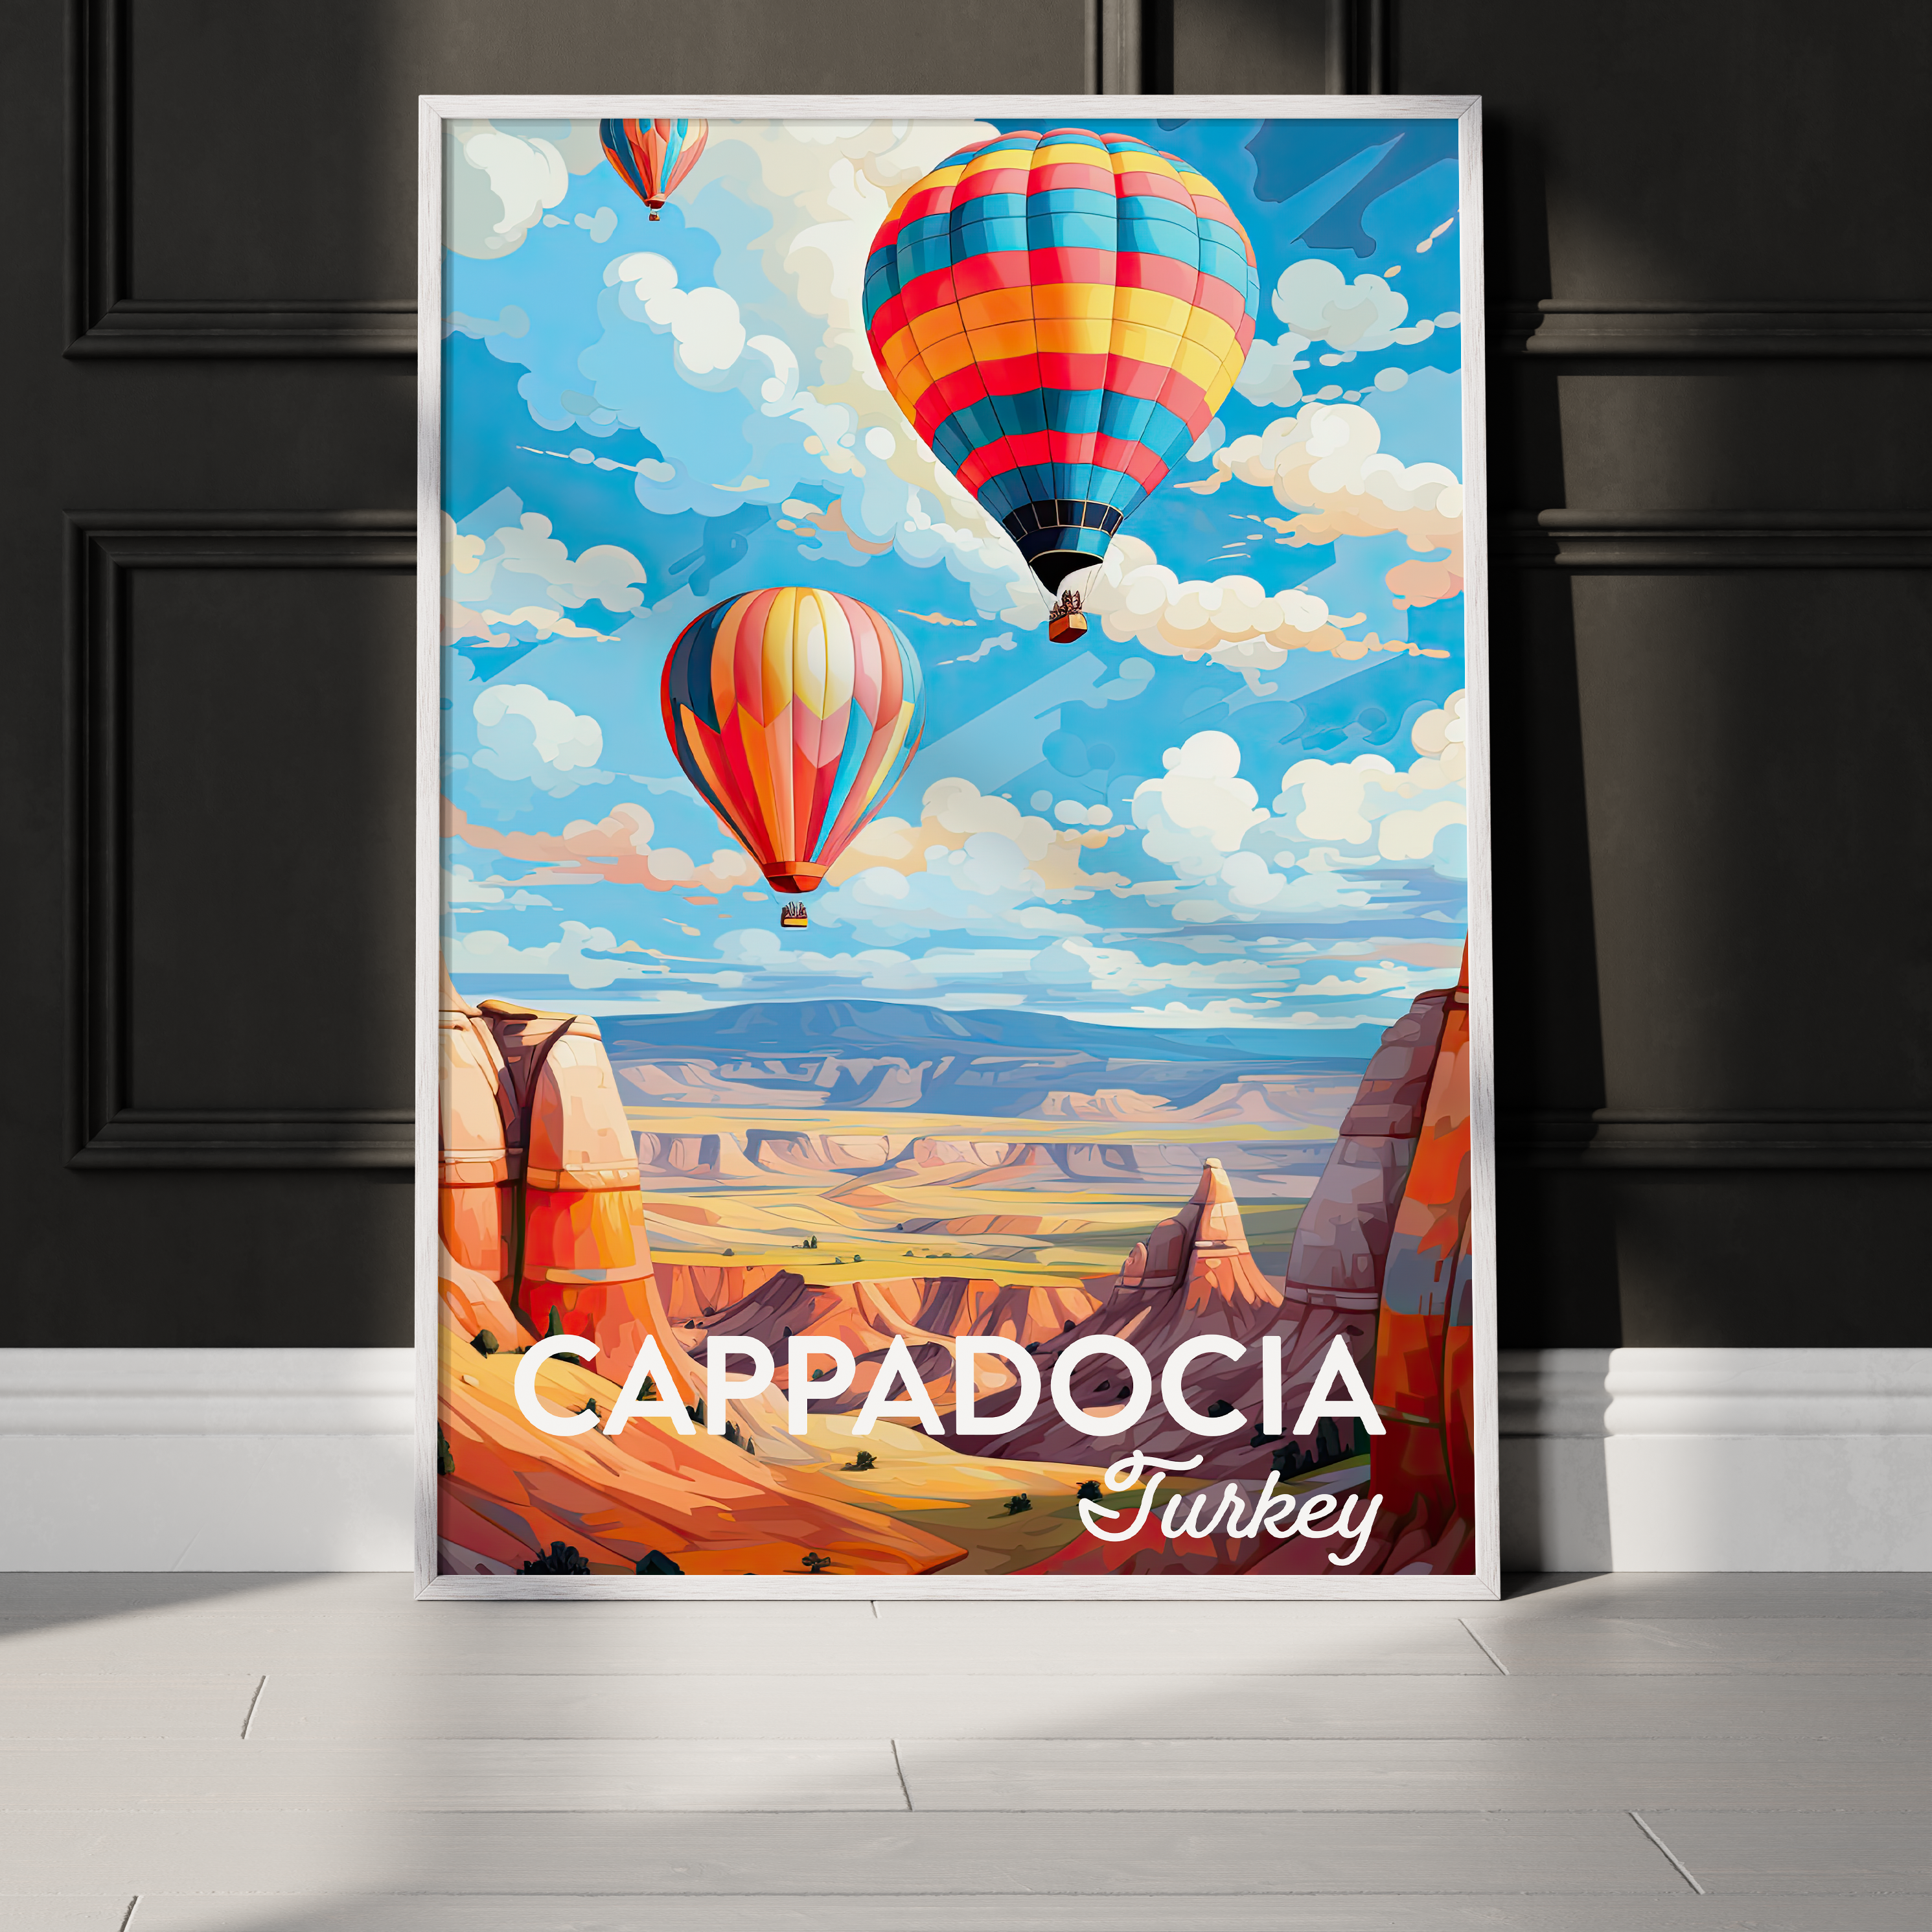 Cappadocia poster in frame